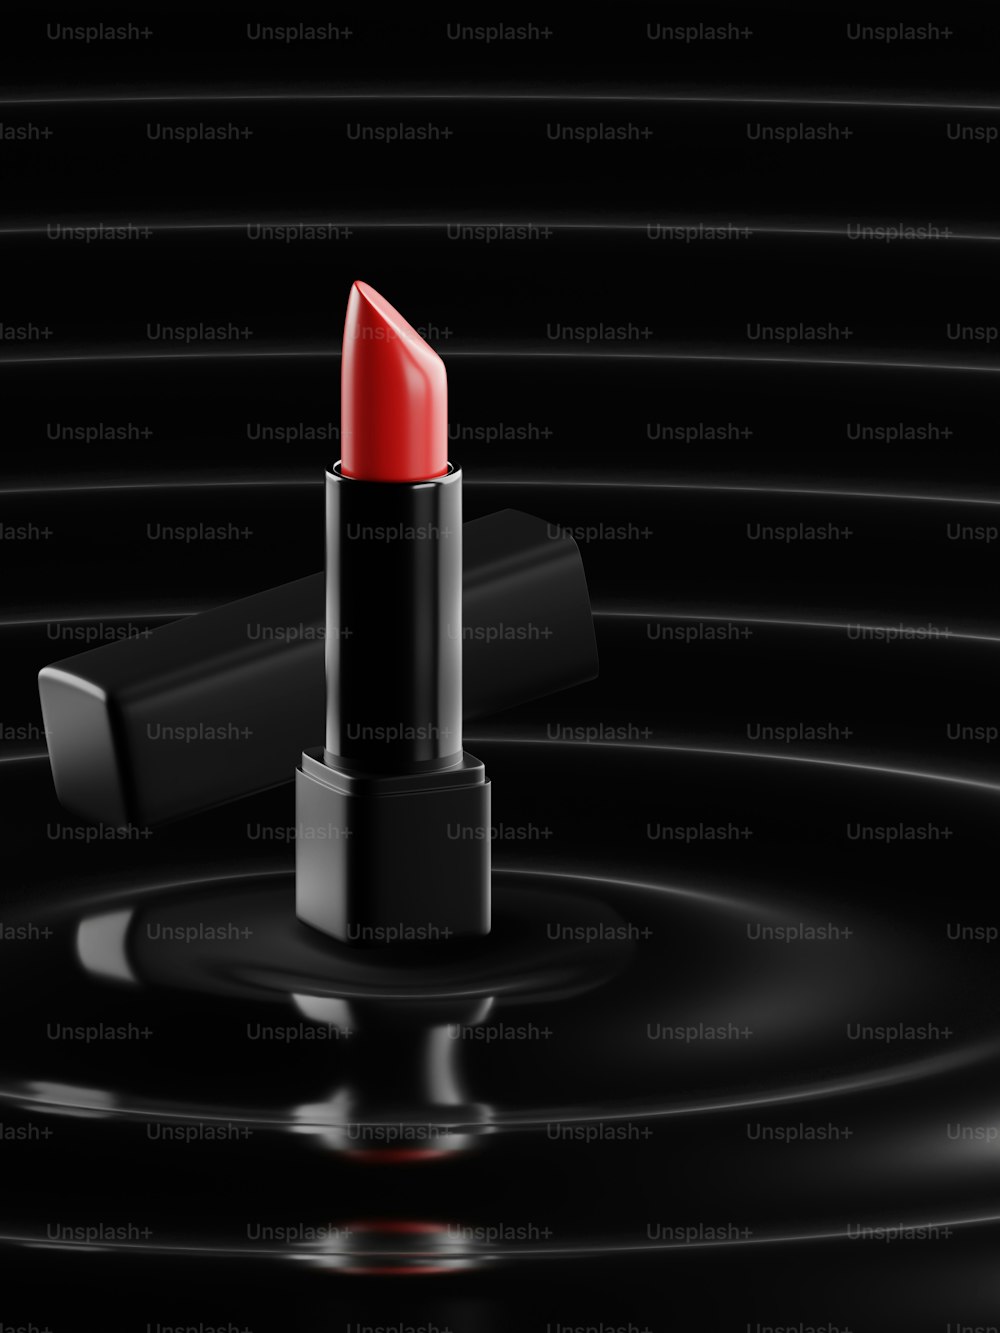 검은 표면 위에 놓인 빨간 립스틱